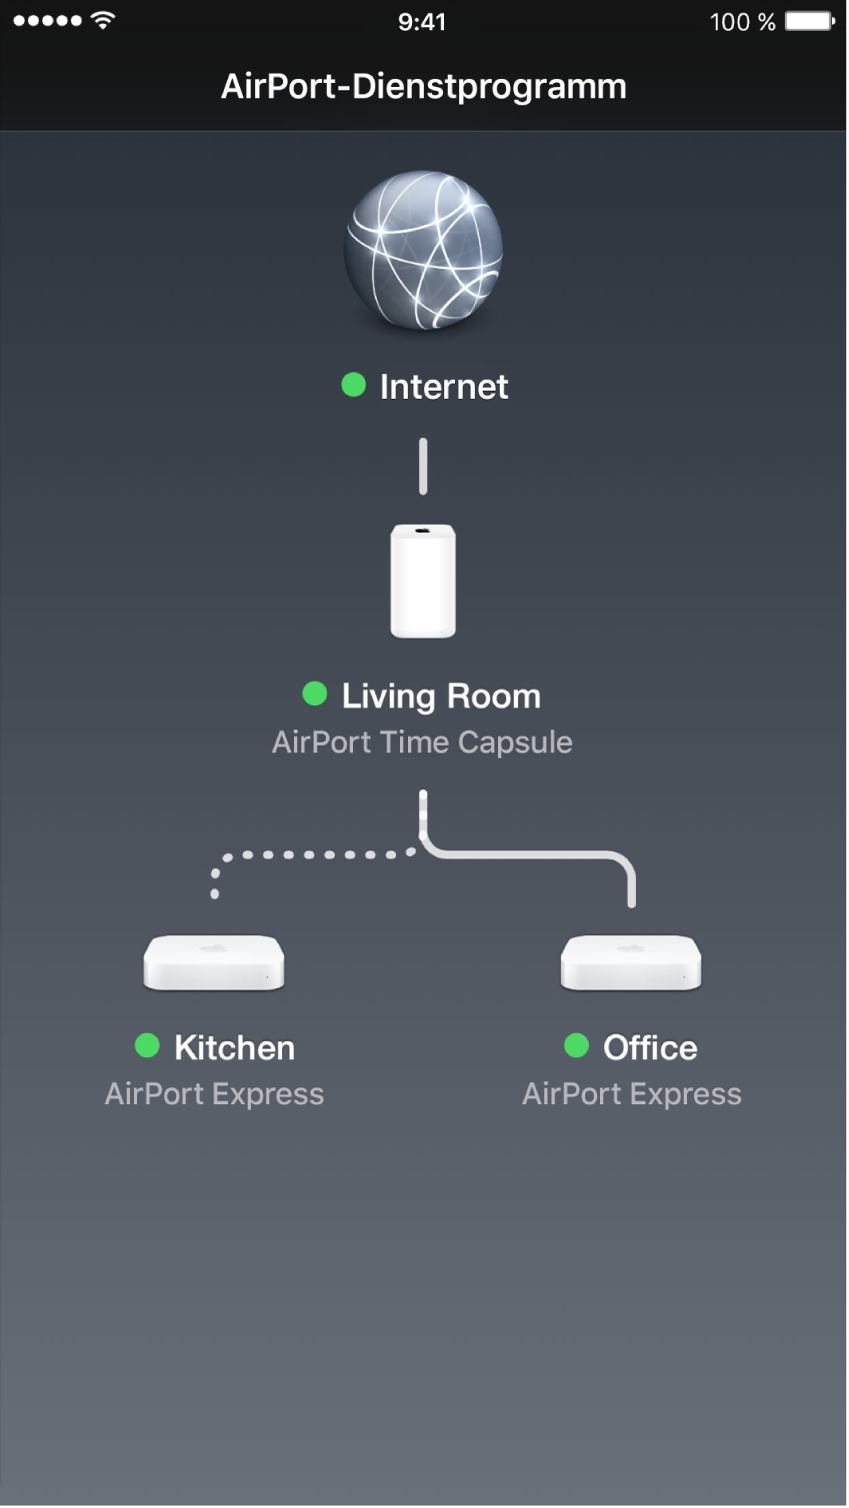 Die Übersichtsgrafik im AirPort-Dienstprogramm für iOS